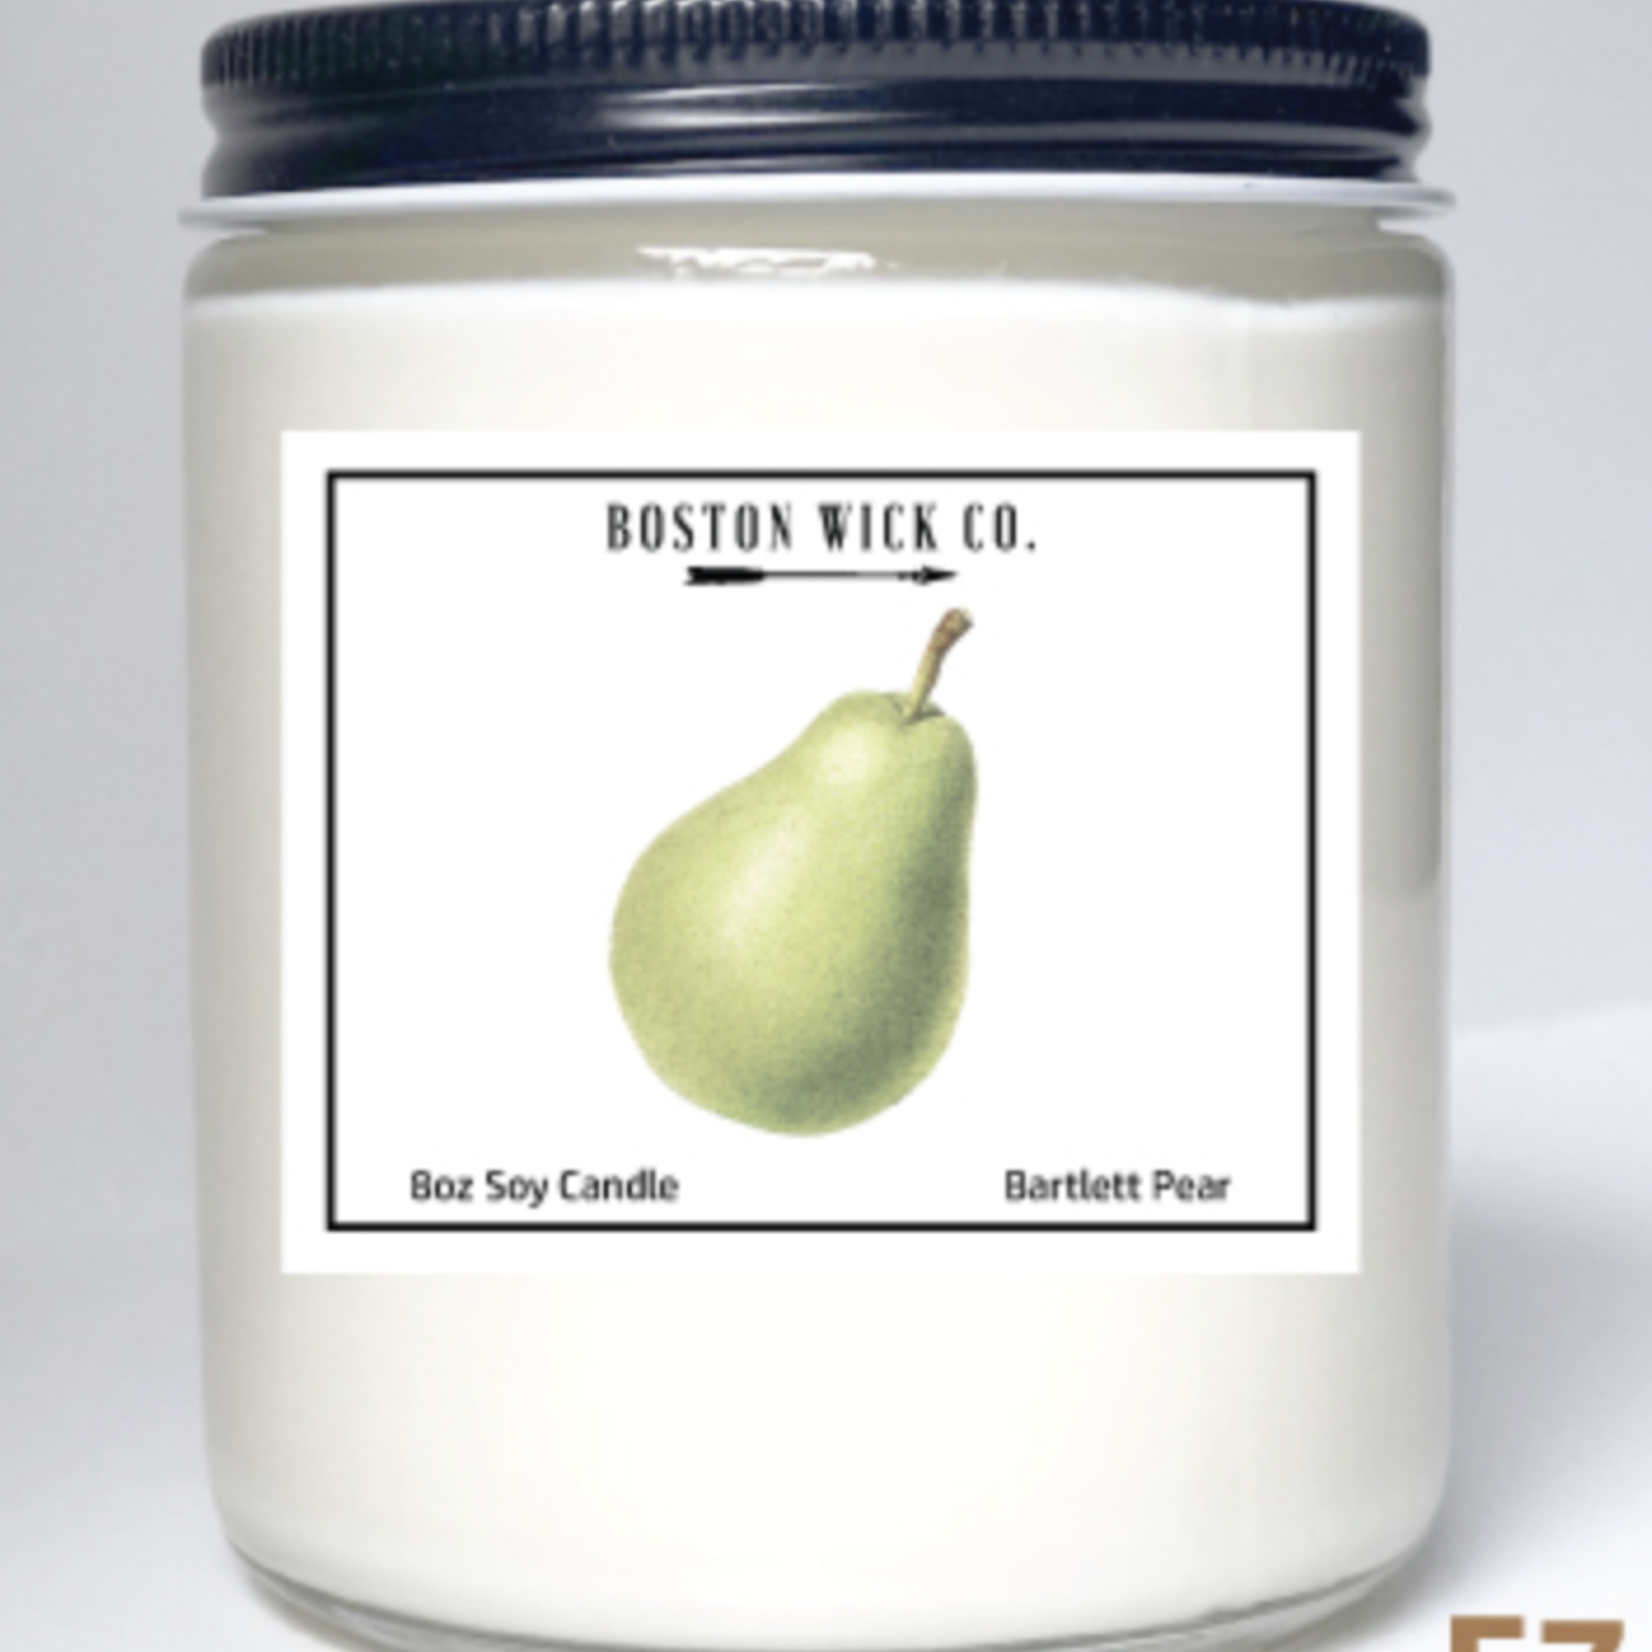 Boston Wick Boston Wick Company - Pear Candle